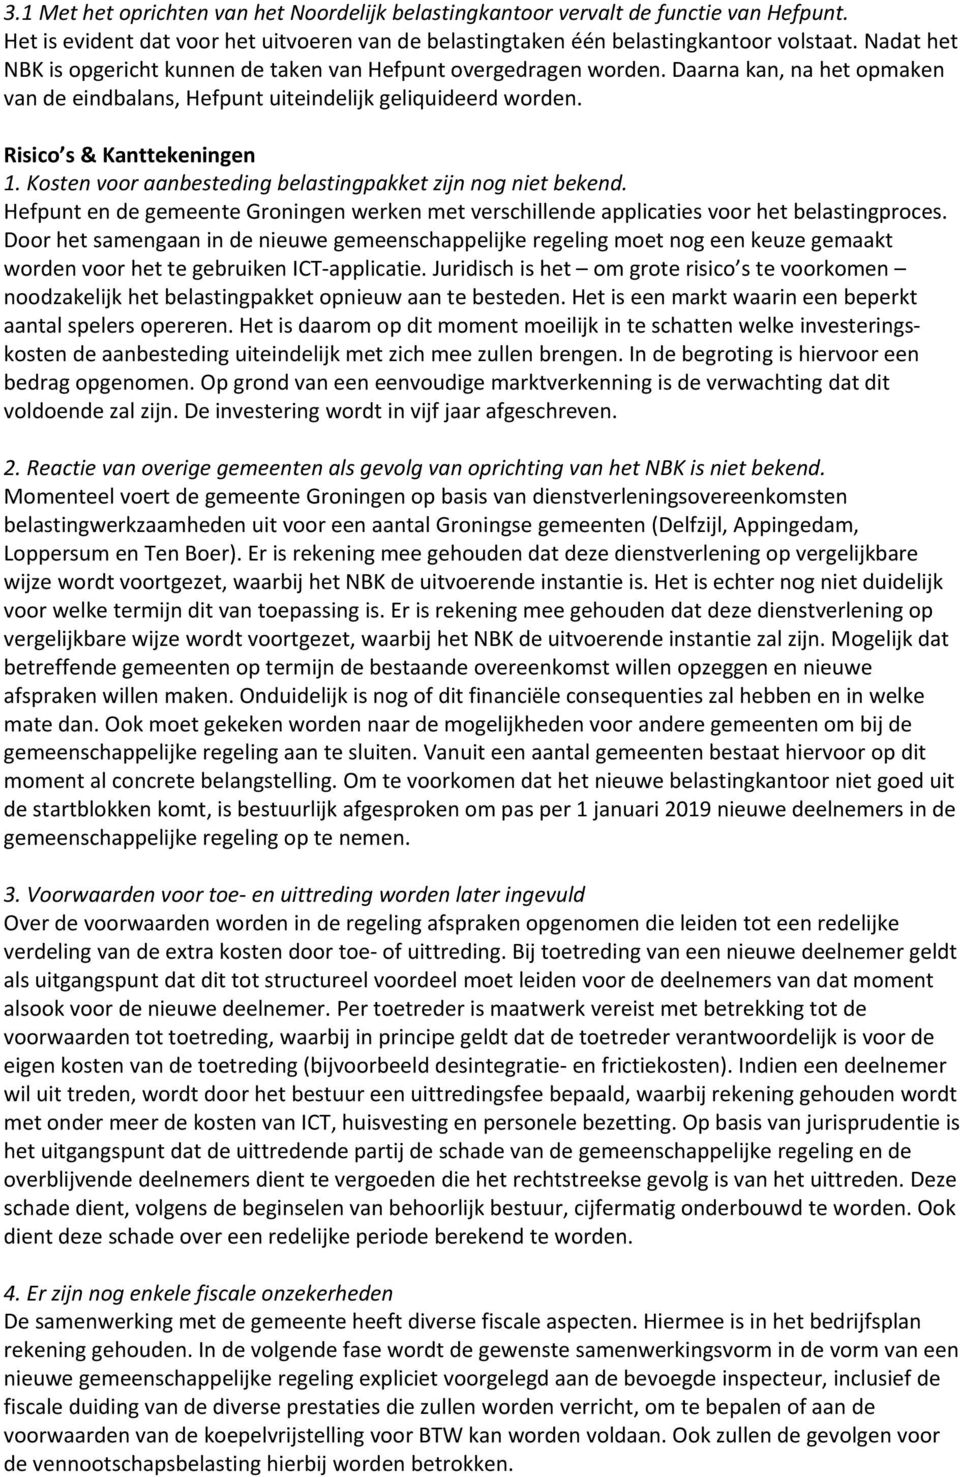 Kosten voor aanbesteding belastingpakket zijn nog niet bekend. Hefpunt en de gemeente Groningen werken met verschillende applicaties voor het belastingproces.